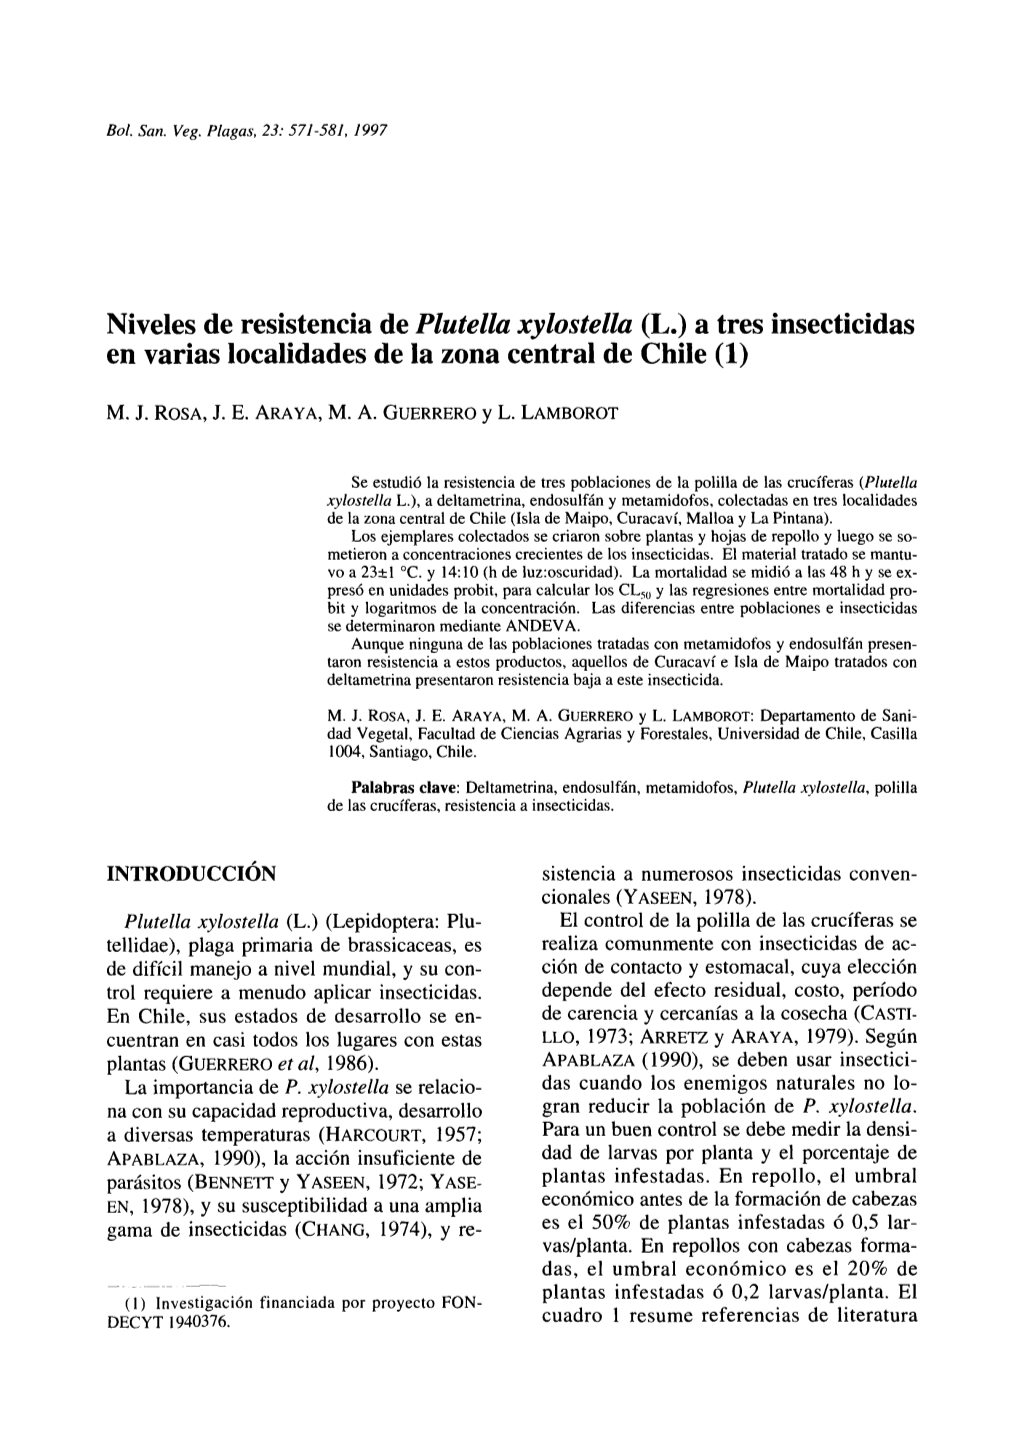 Niveles De Resistencia De Plutella Xylostella (L.) a Tres Insecticidas En Varias Localidades De La Zona Central De Chile (1)